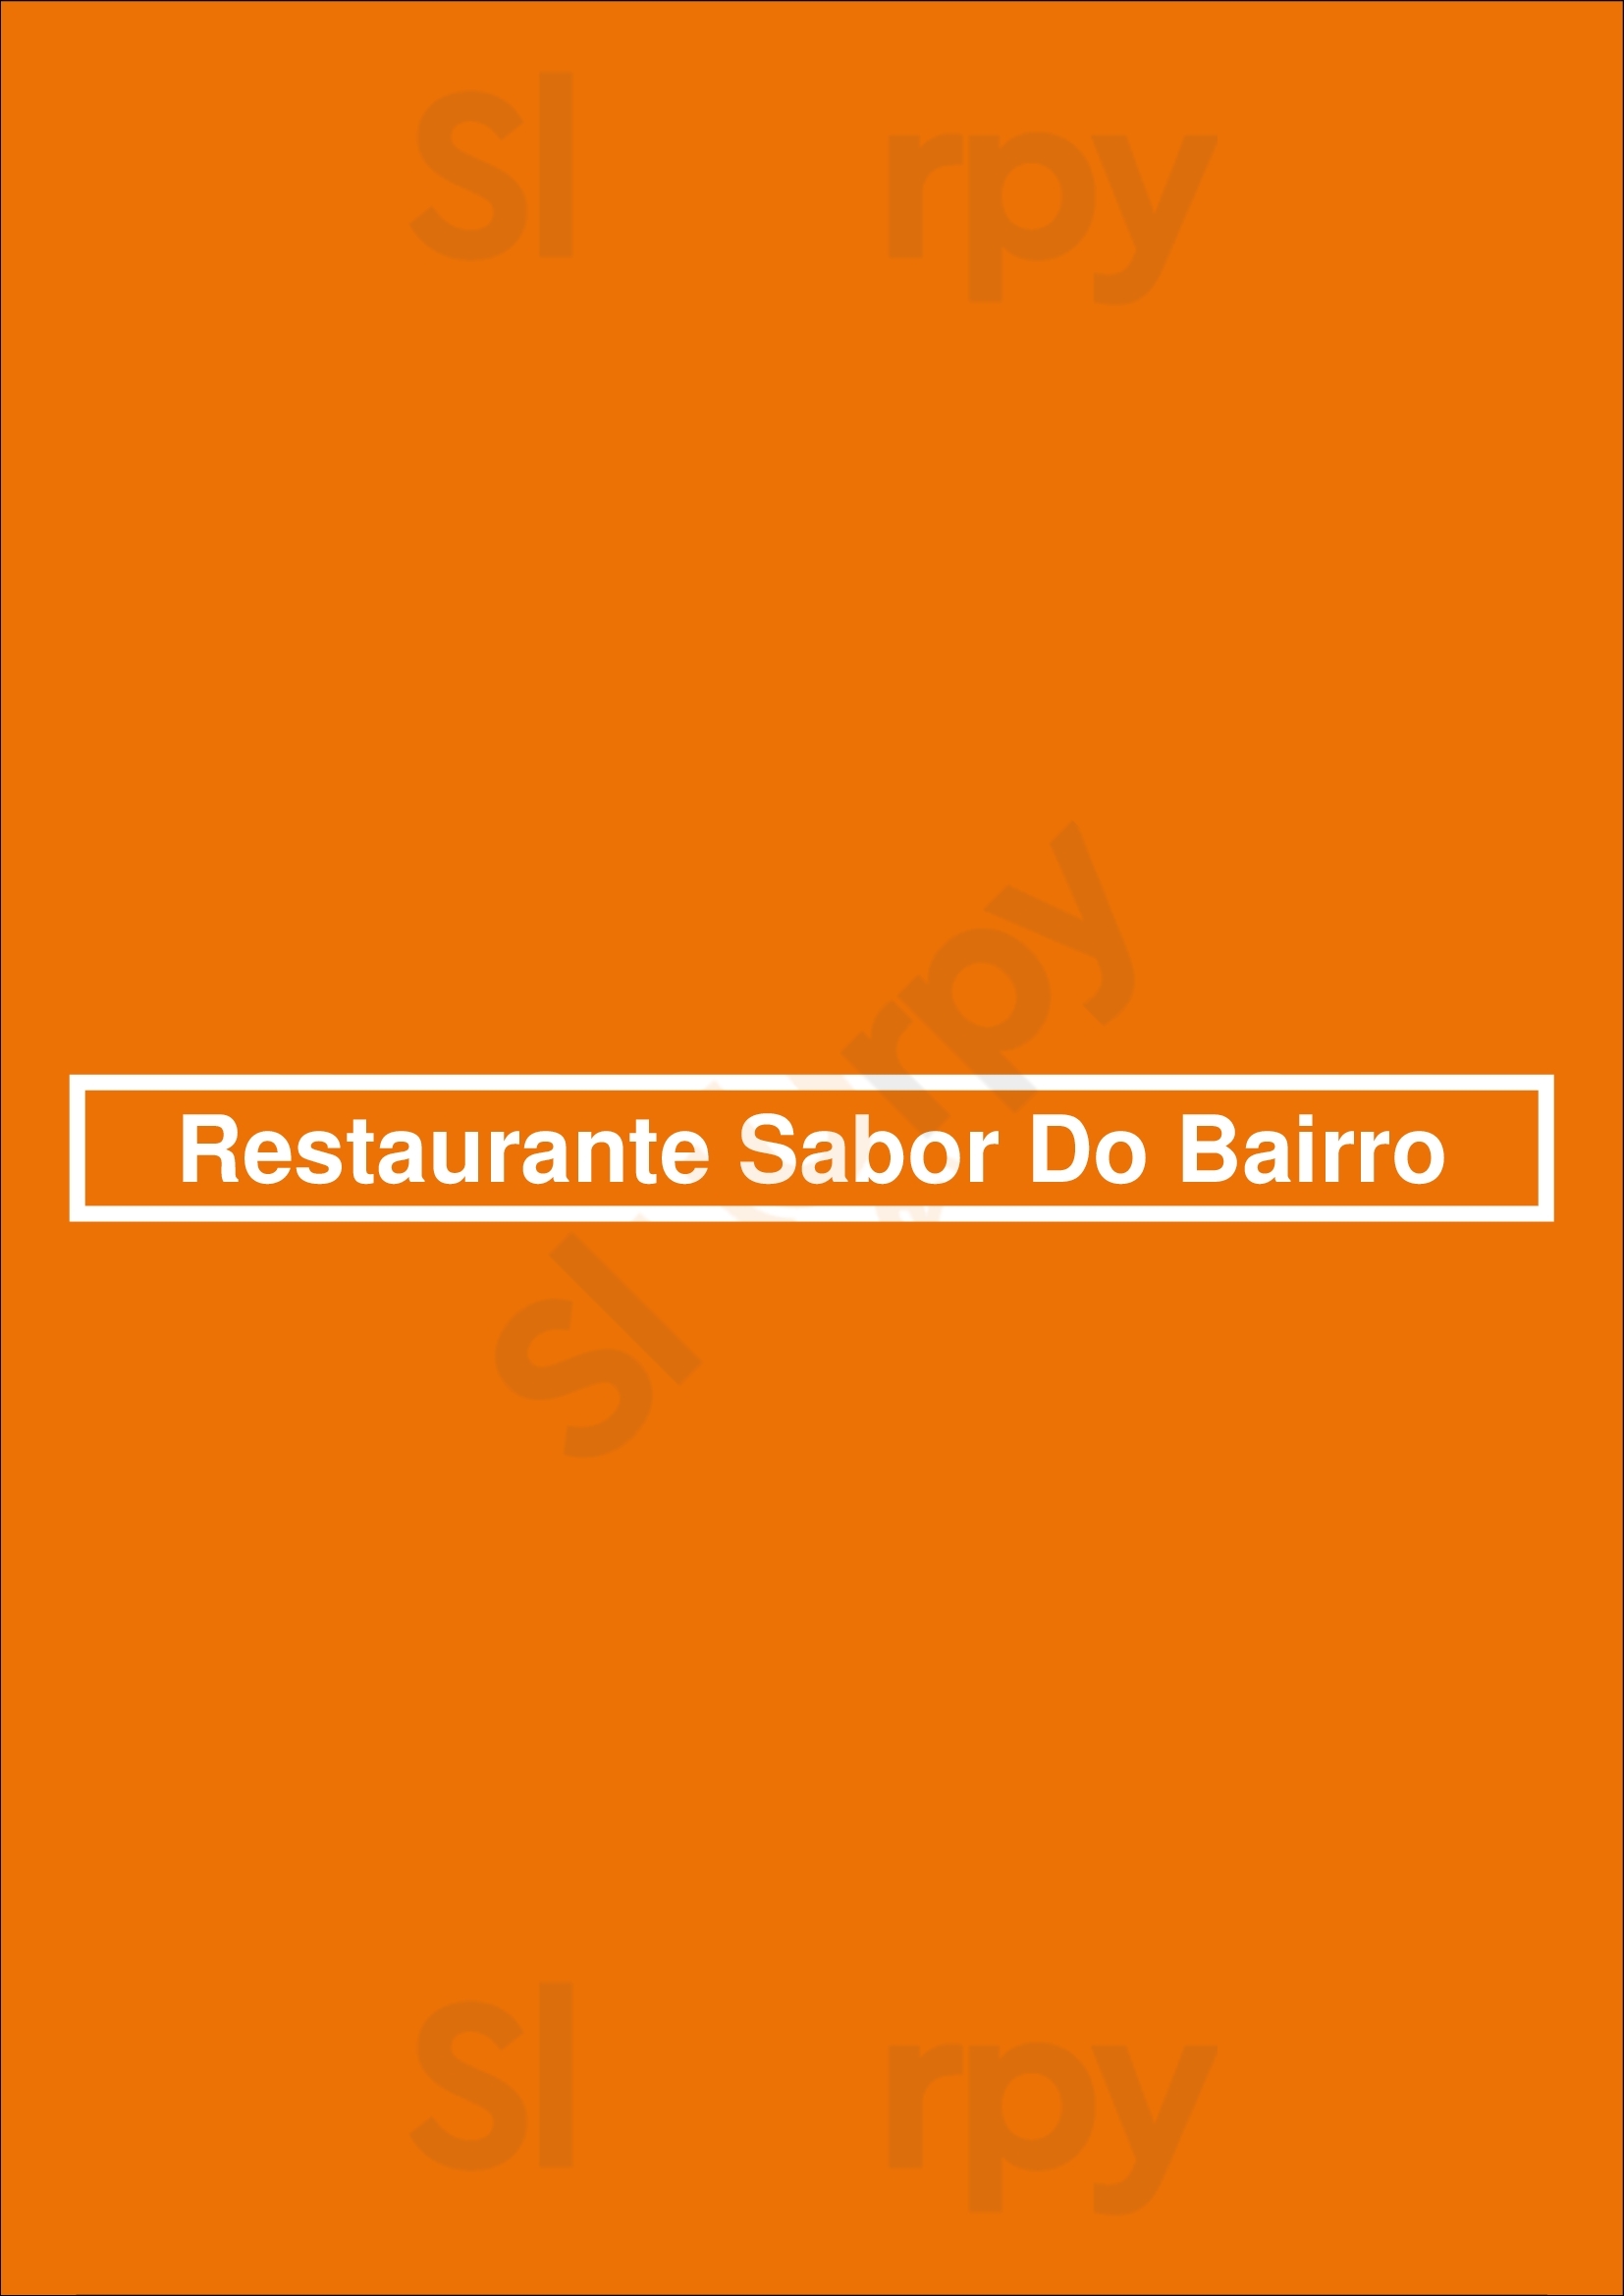 Restaurante Sabor Do Bairro Lisboa Menu - 1